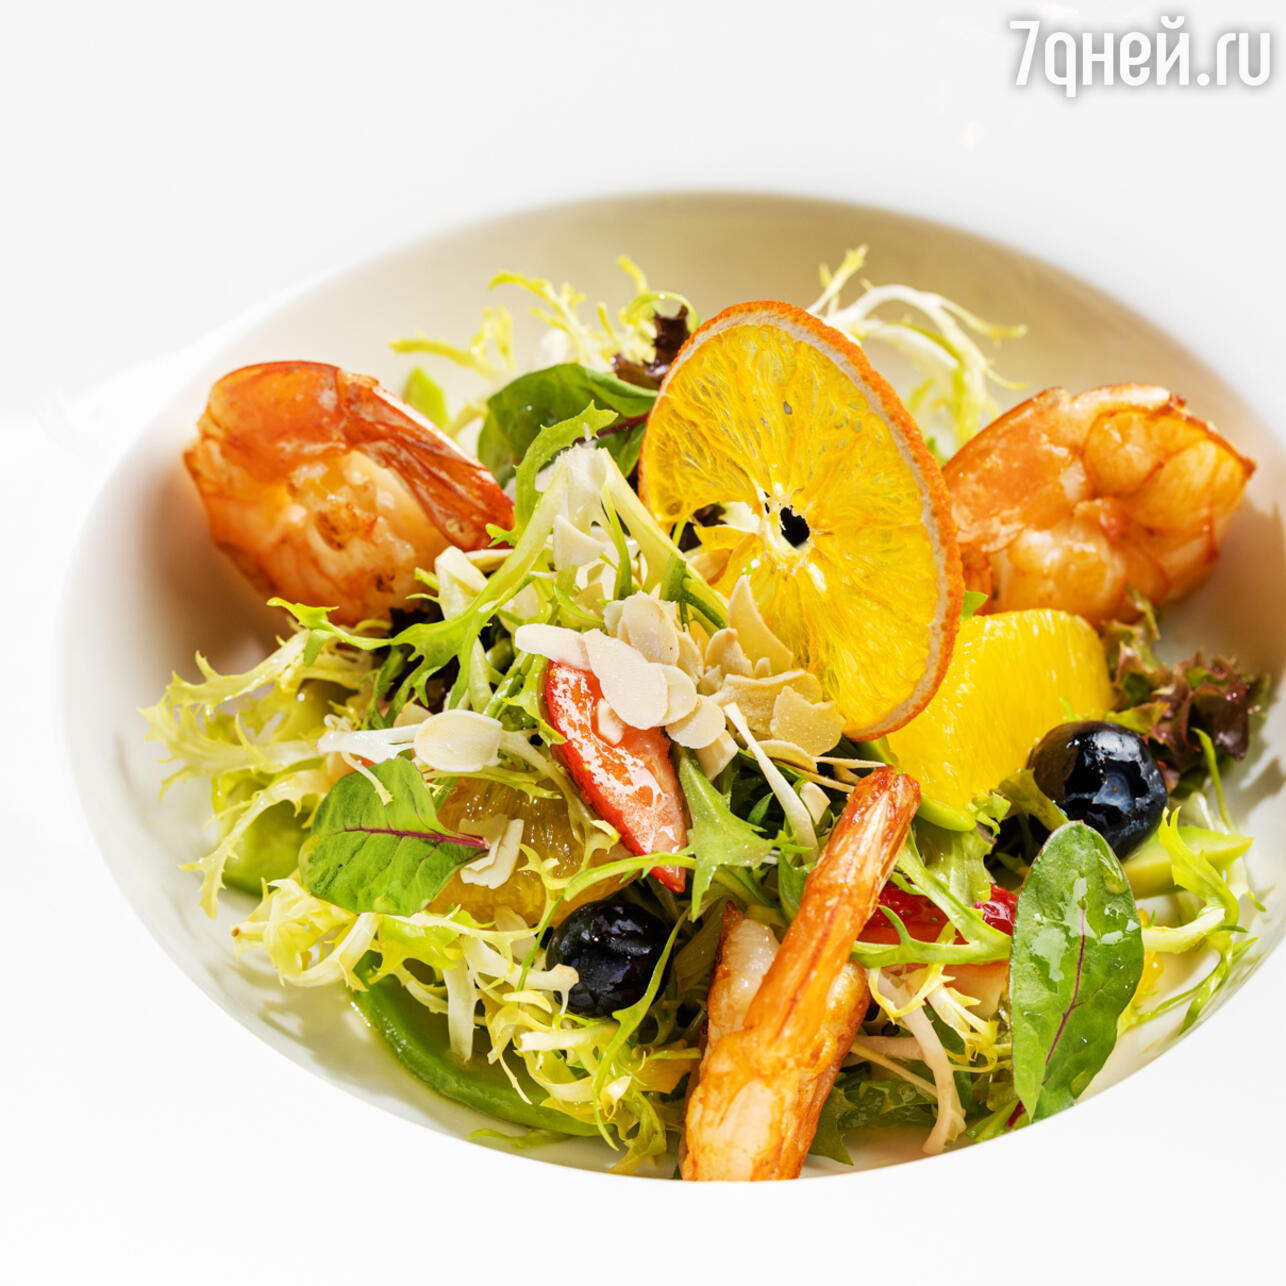 Рецепты салатов и вкусняшек | Дзен